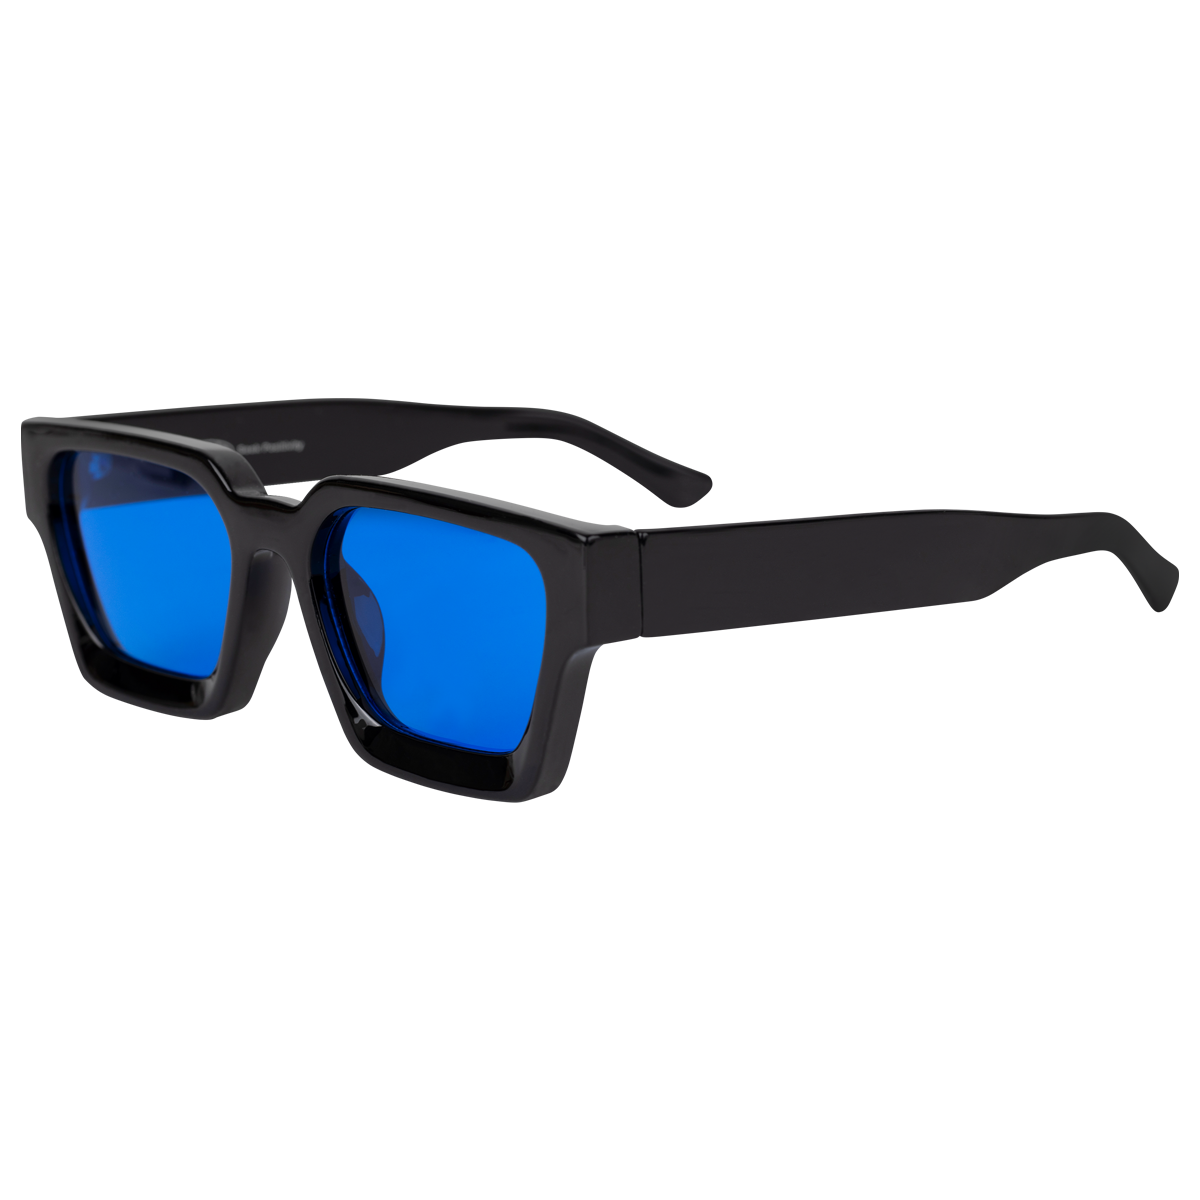 Optimistics Sunglasses in Black/Blue